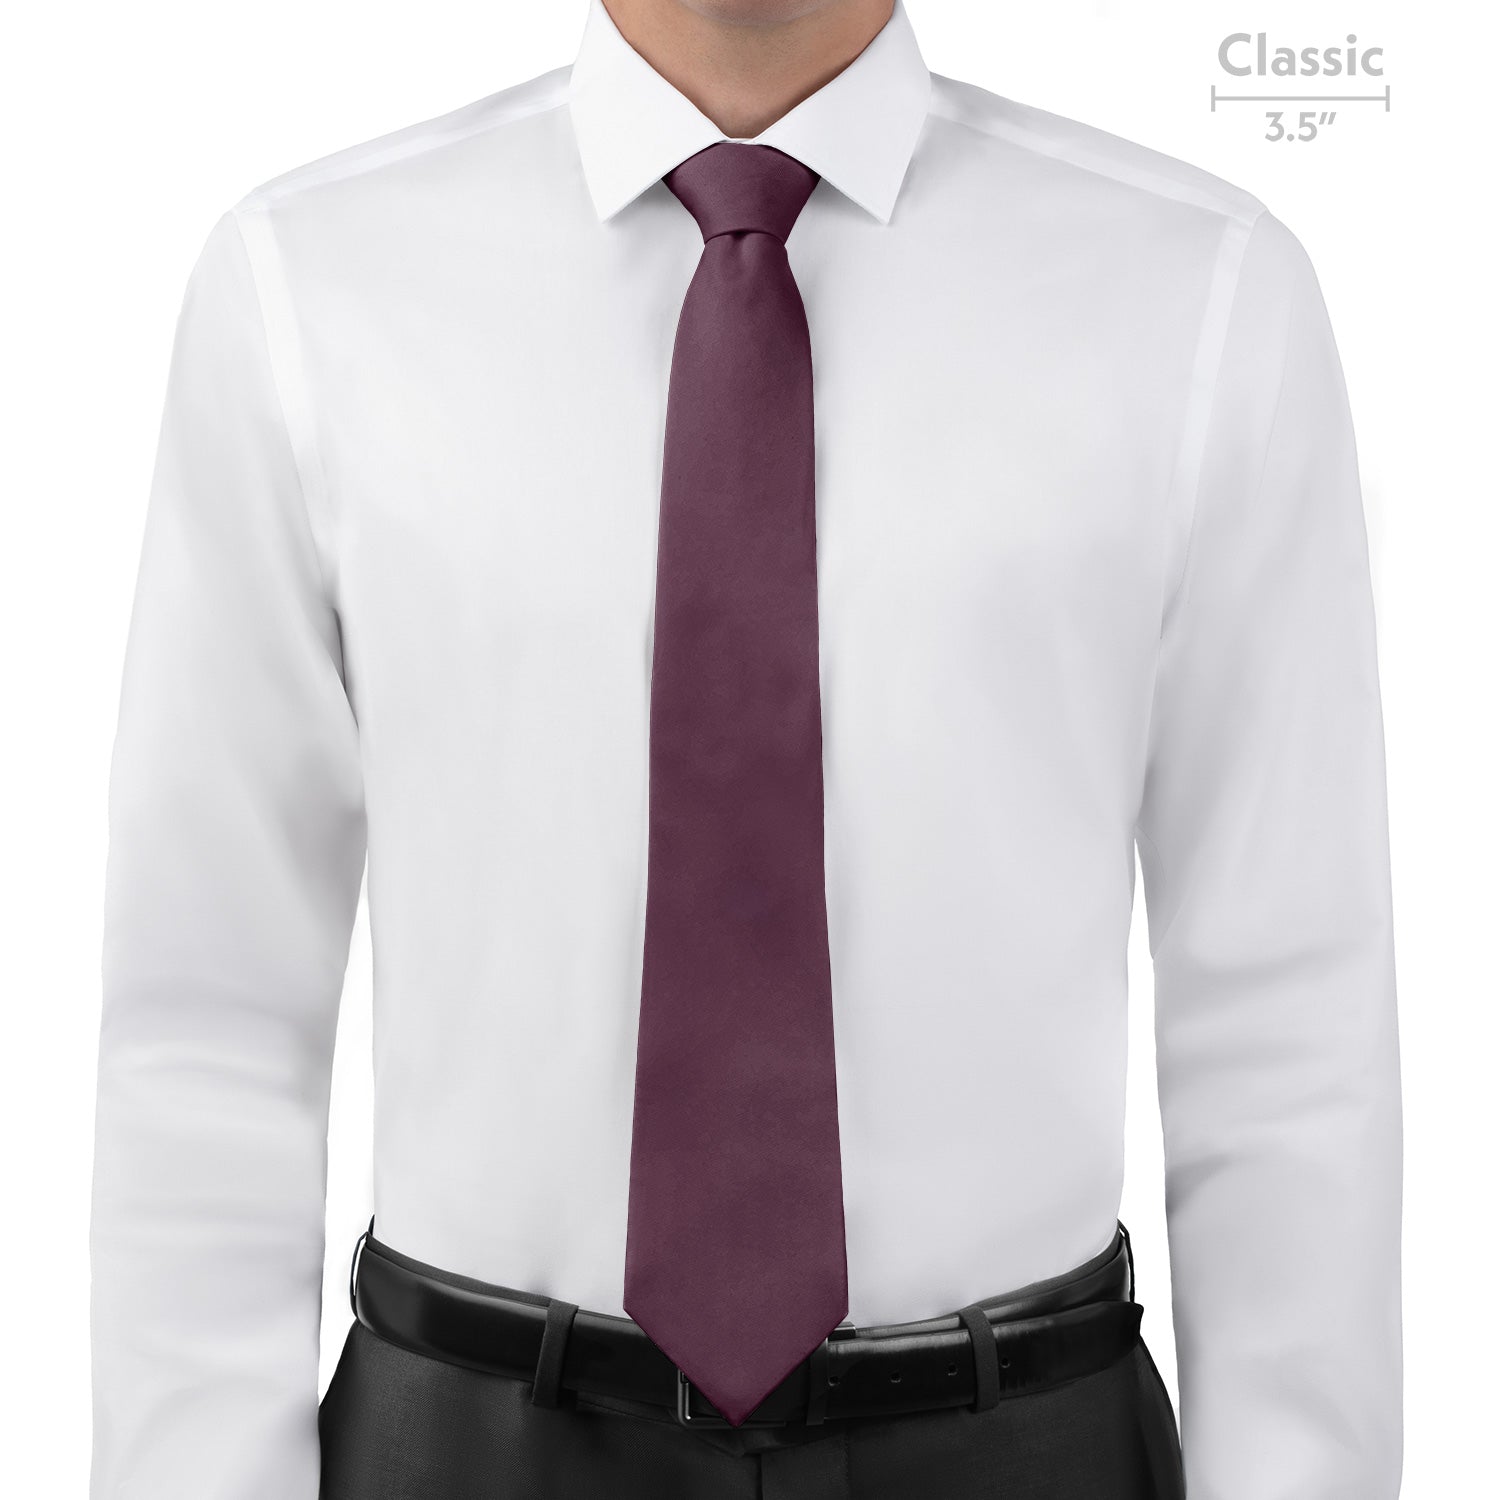 Azazie Acai Necktie - Classic - Knotty Tie Co.